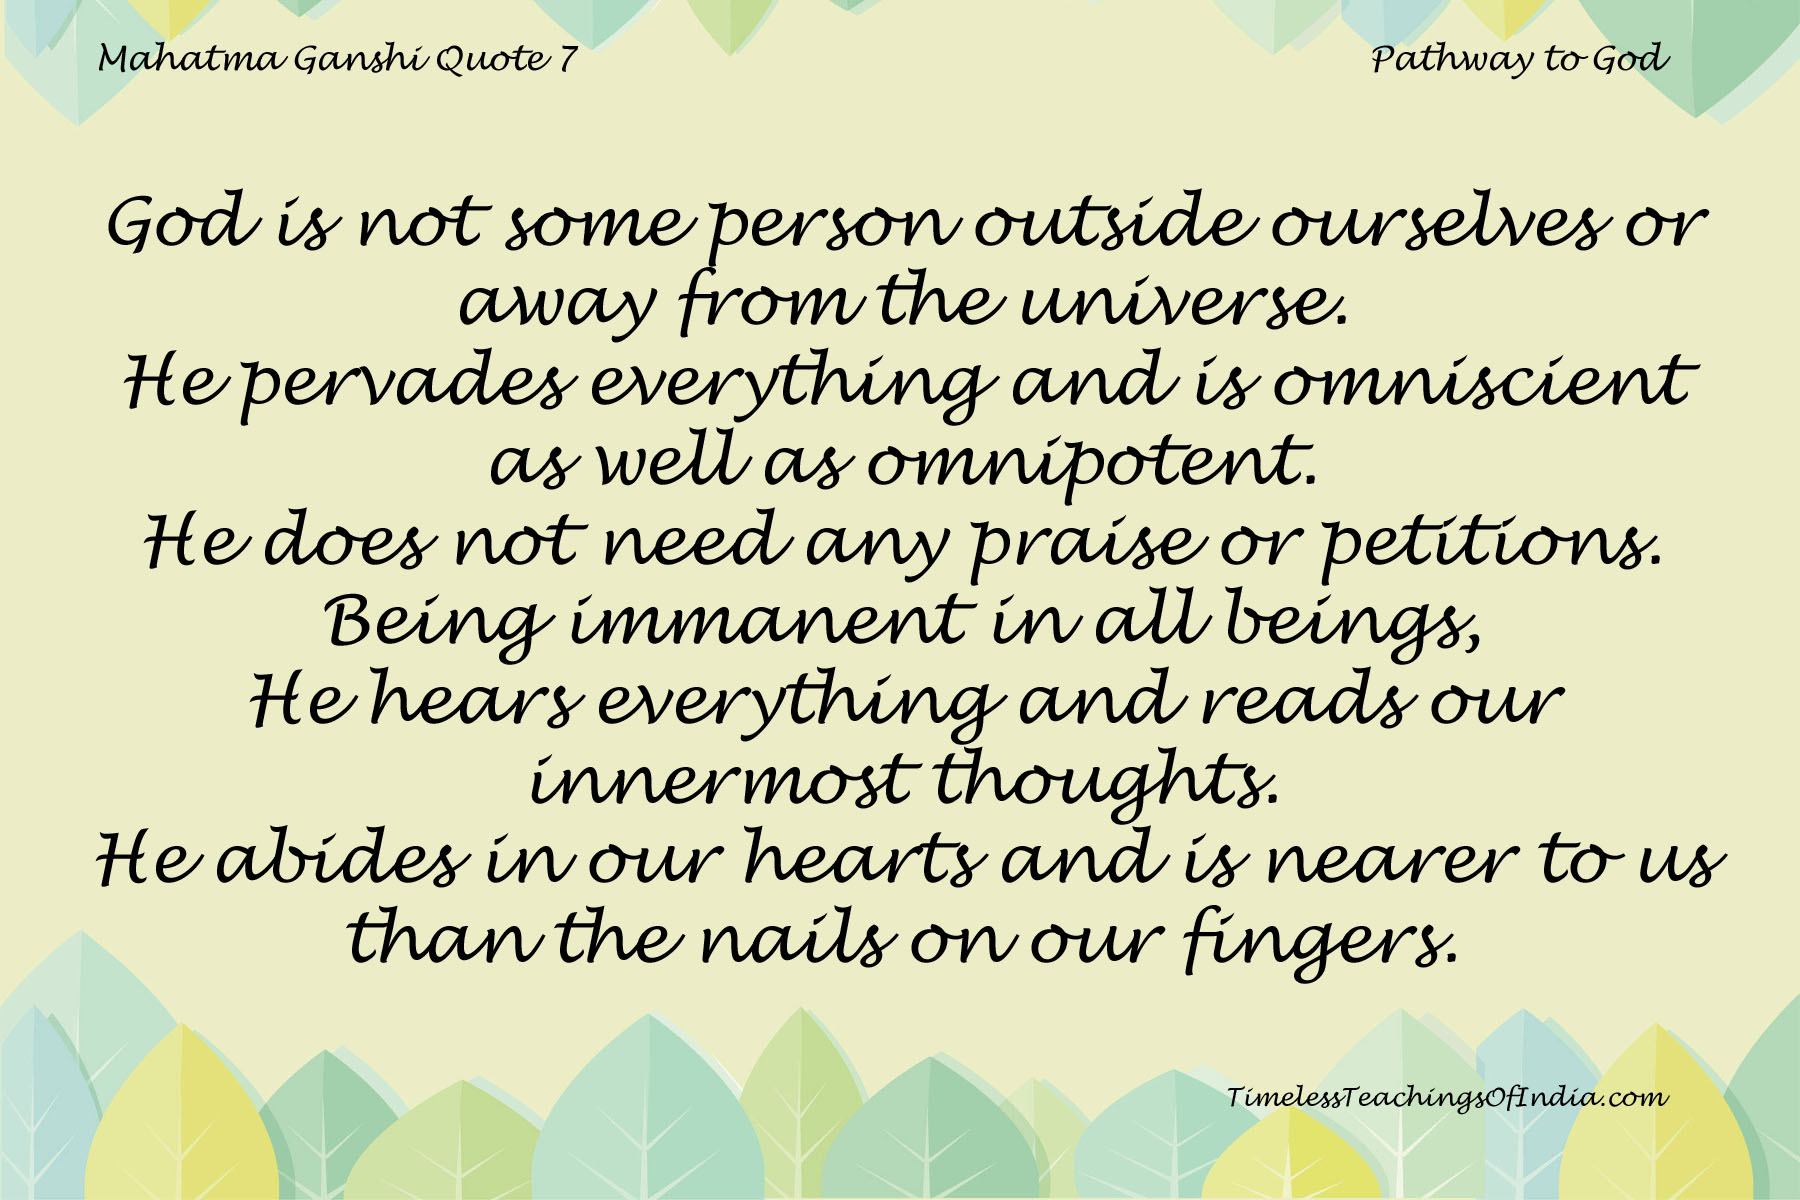 Mahatma Gandhi Quote 7